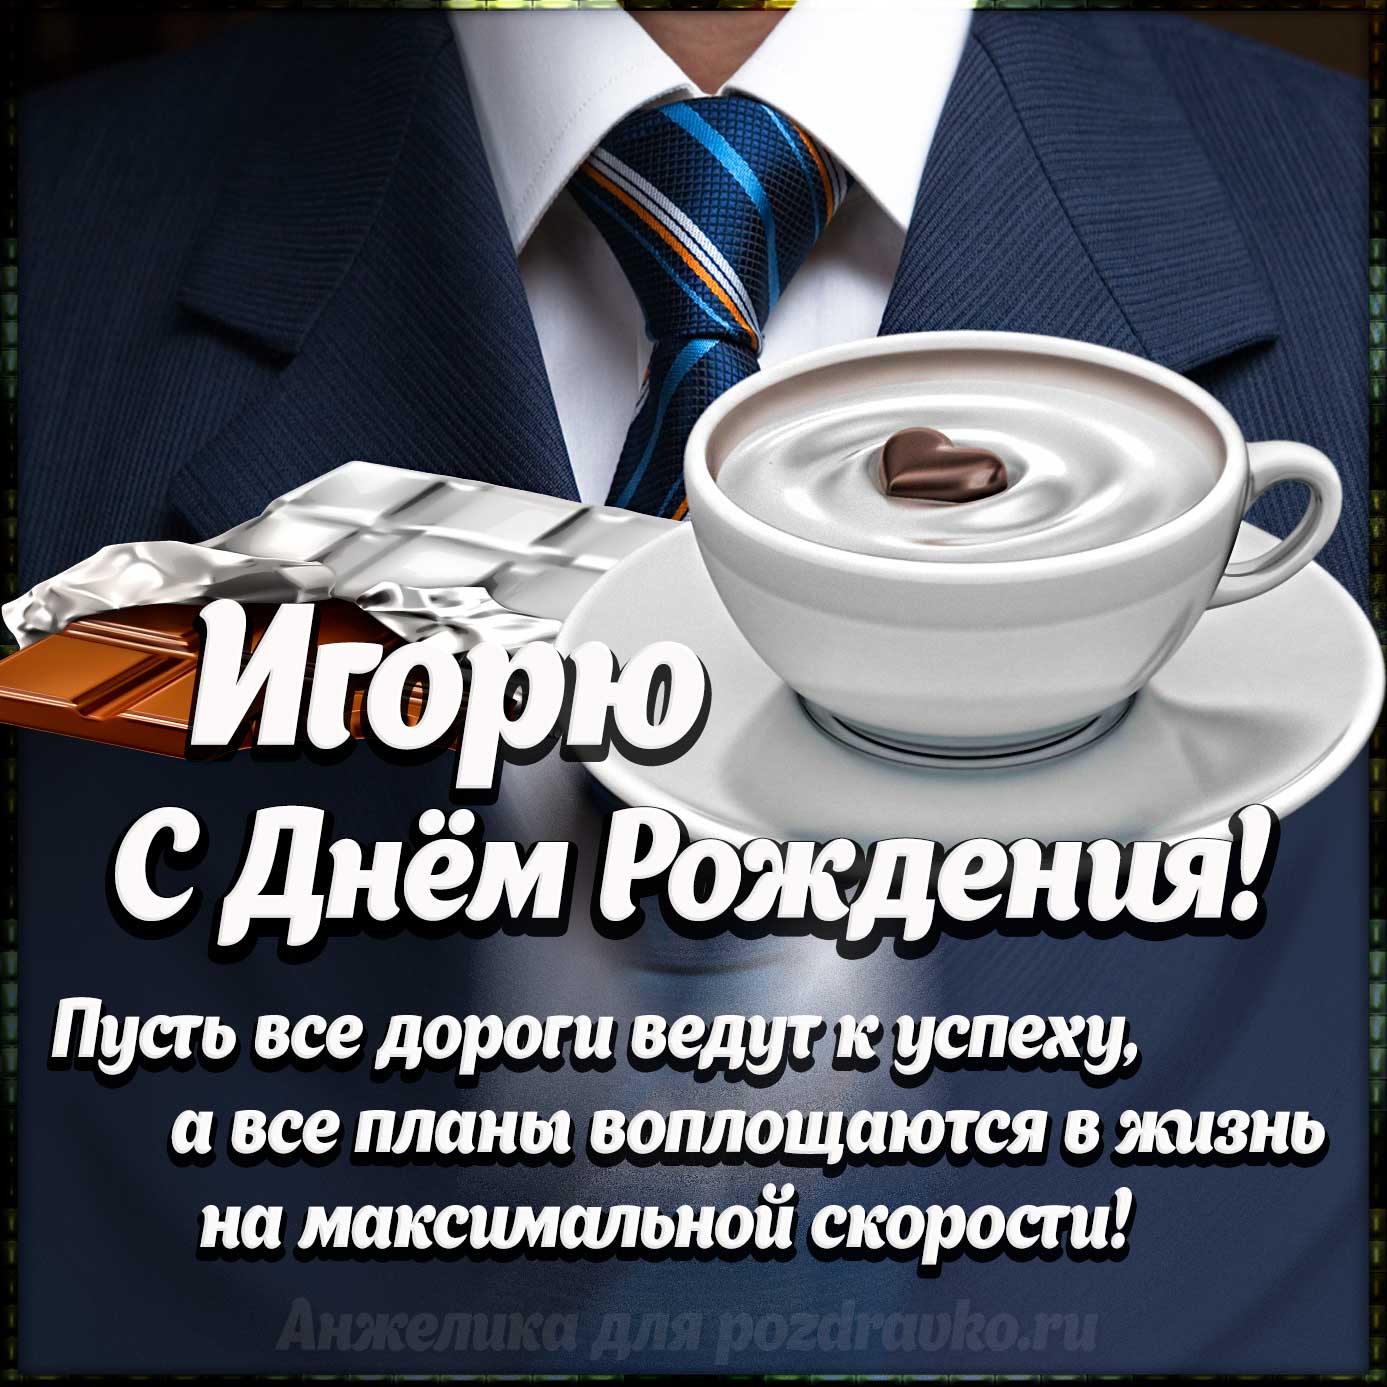 Открытка - Игорю с Днем Рождения с галстуком, кофе и пожеланием. Скачать бесплатно или отправить картинку.